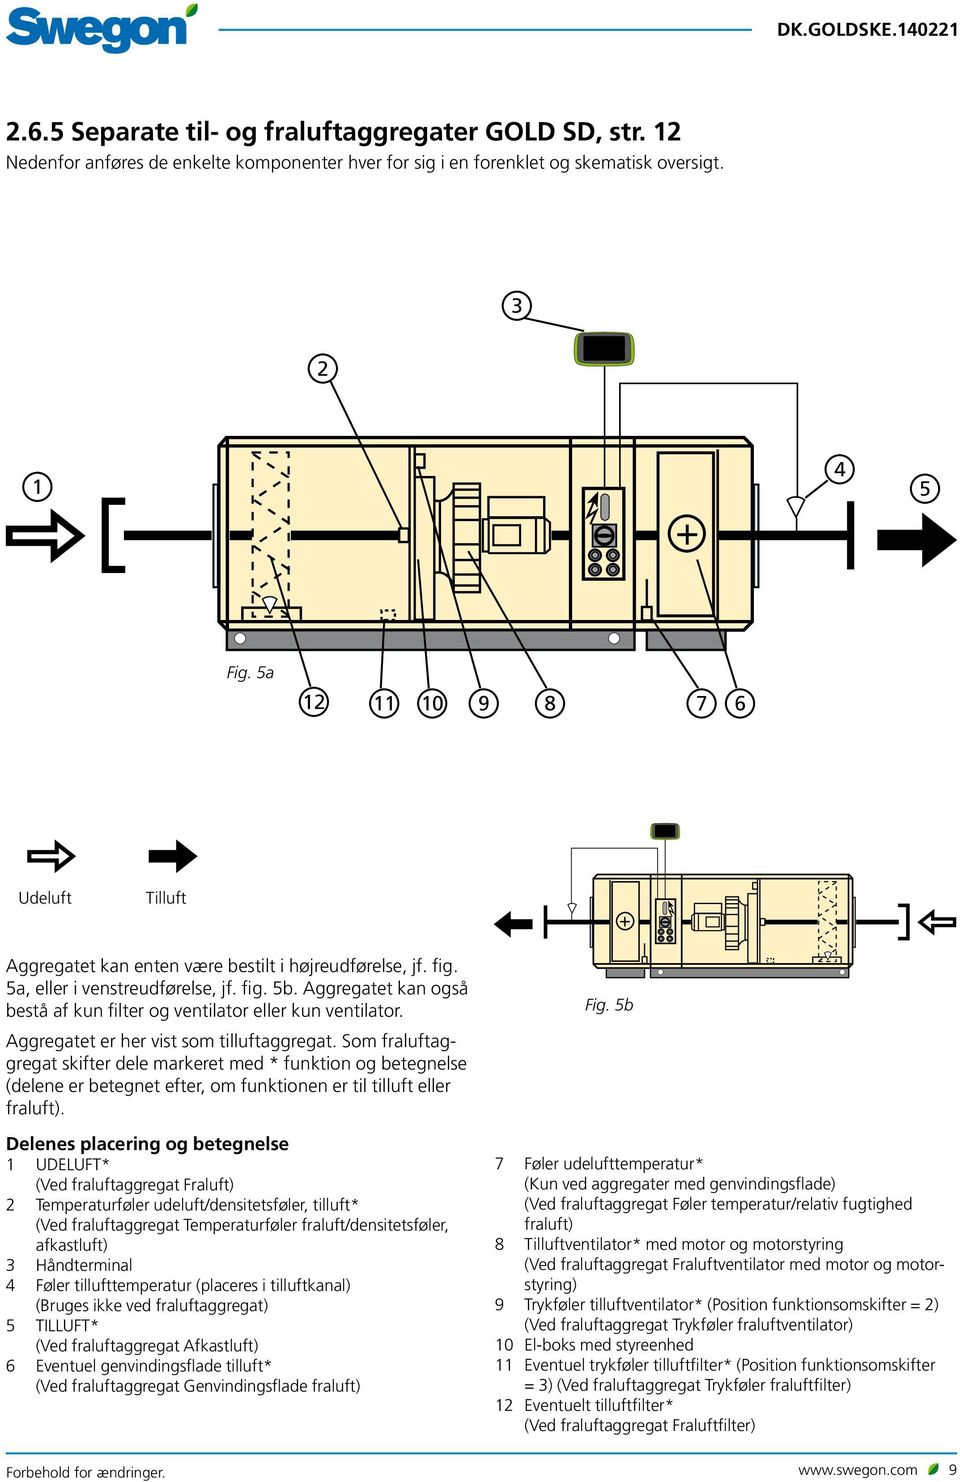 Aggregatet kan også bestå af kun filter og ventilator eller kun ventilator. Aggregatet er her vist som tilluftaggregat.